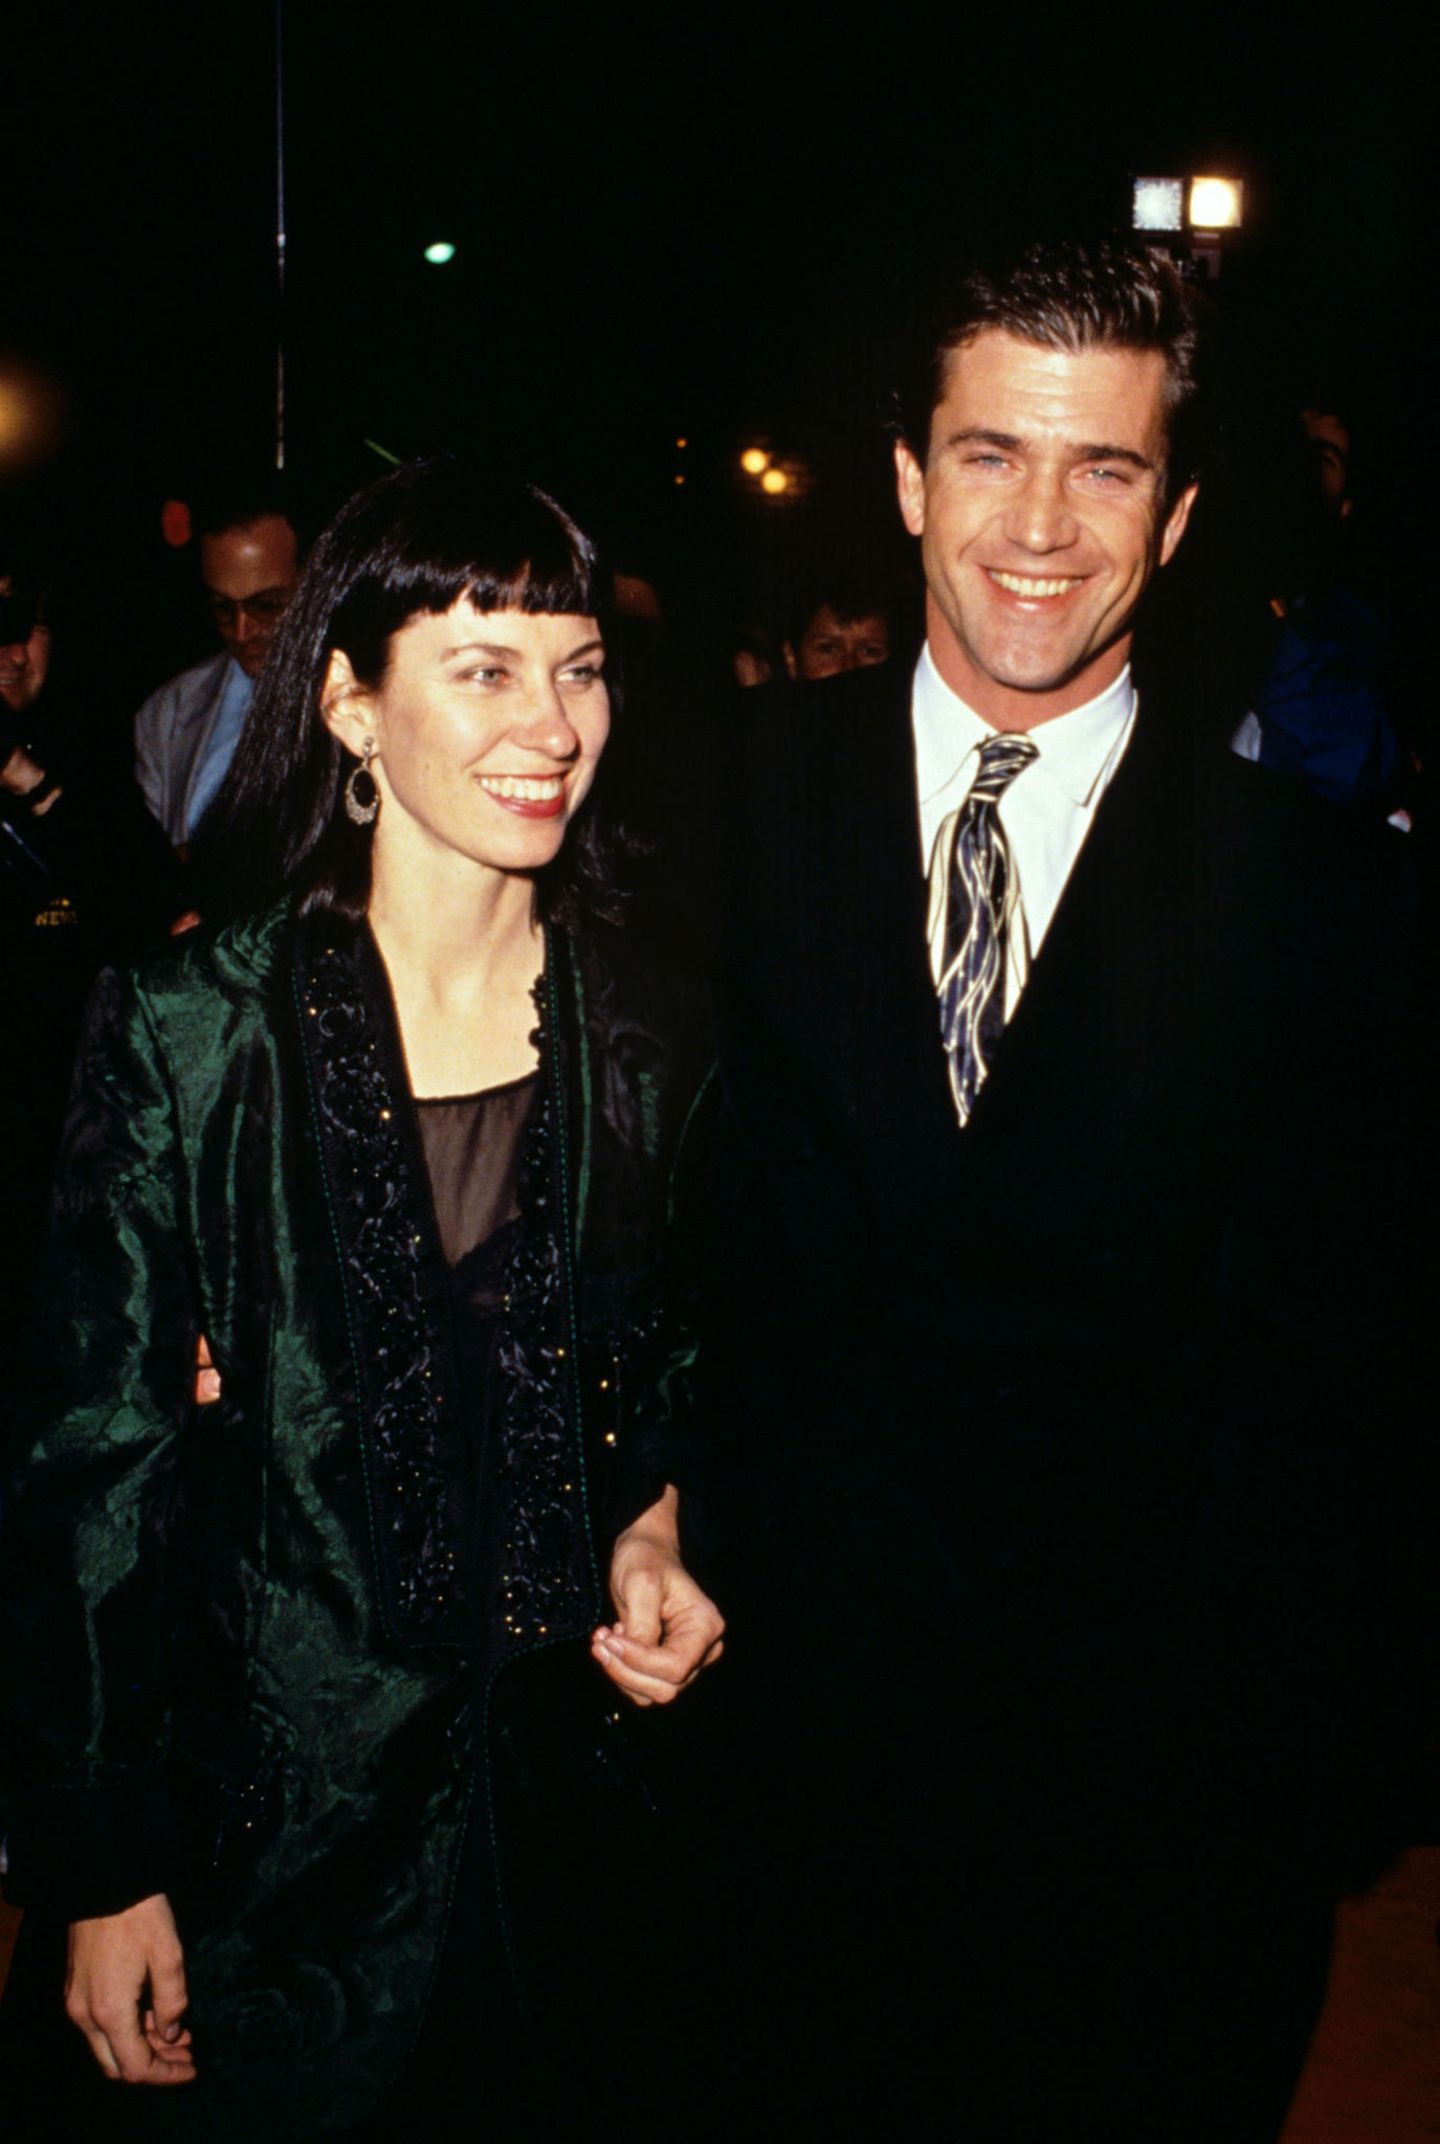 Promi-Scheidungen: Mel Gibson und Robyn Moore